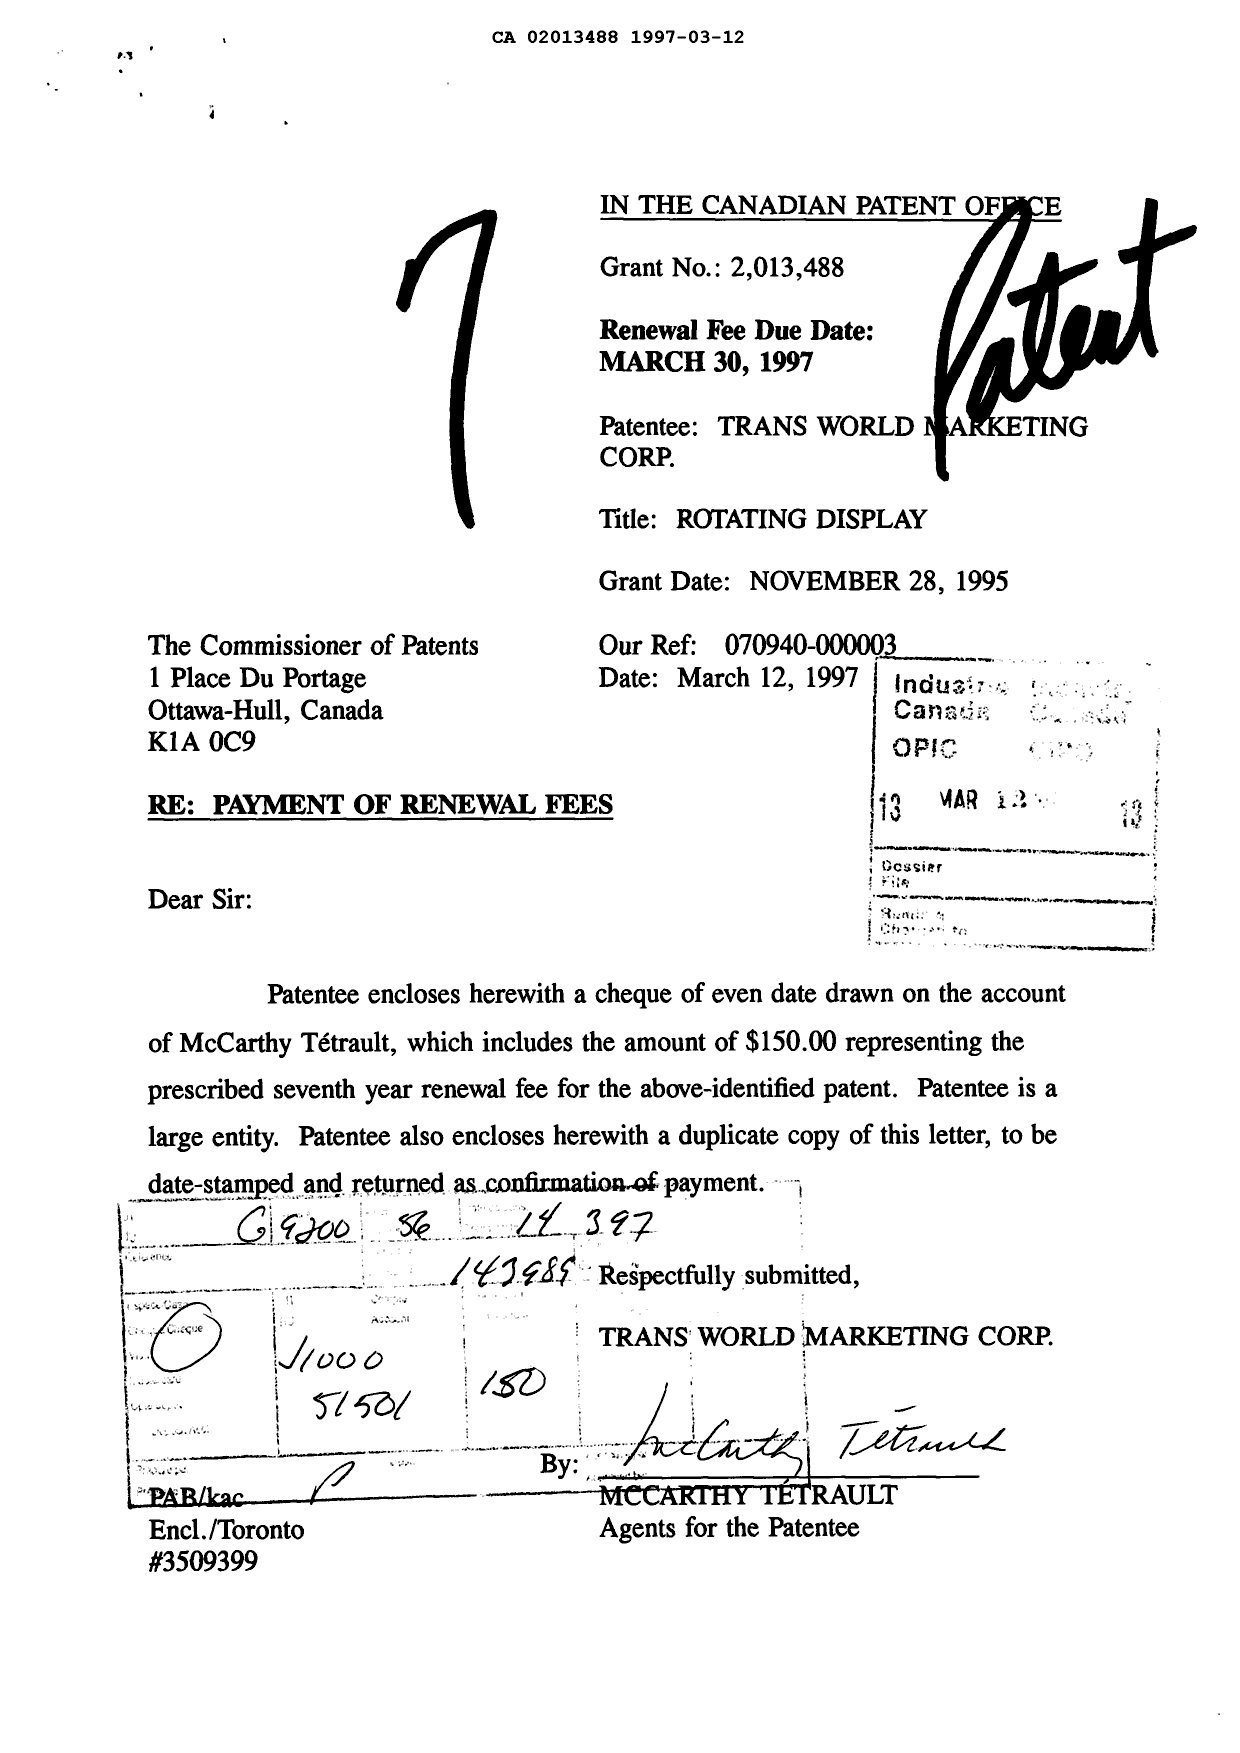 Document de brevet canadien 2013488. Taxes 19970312. Image 1 de 1